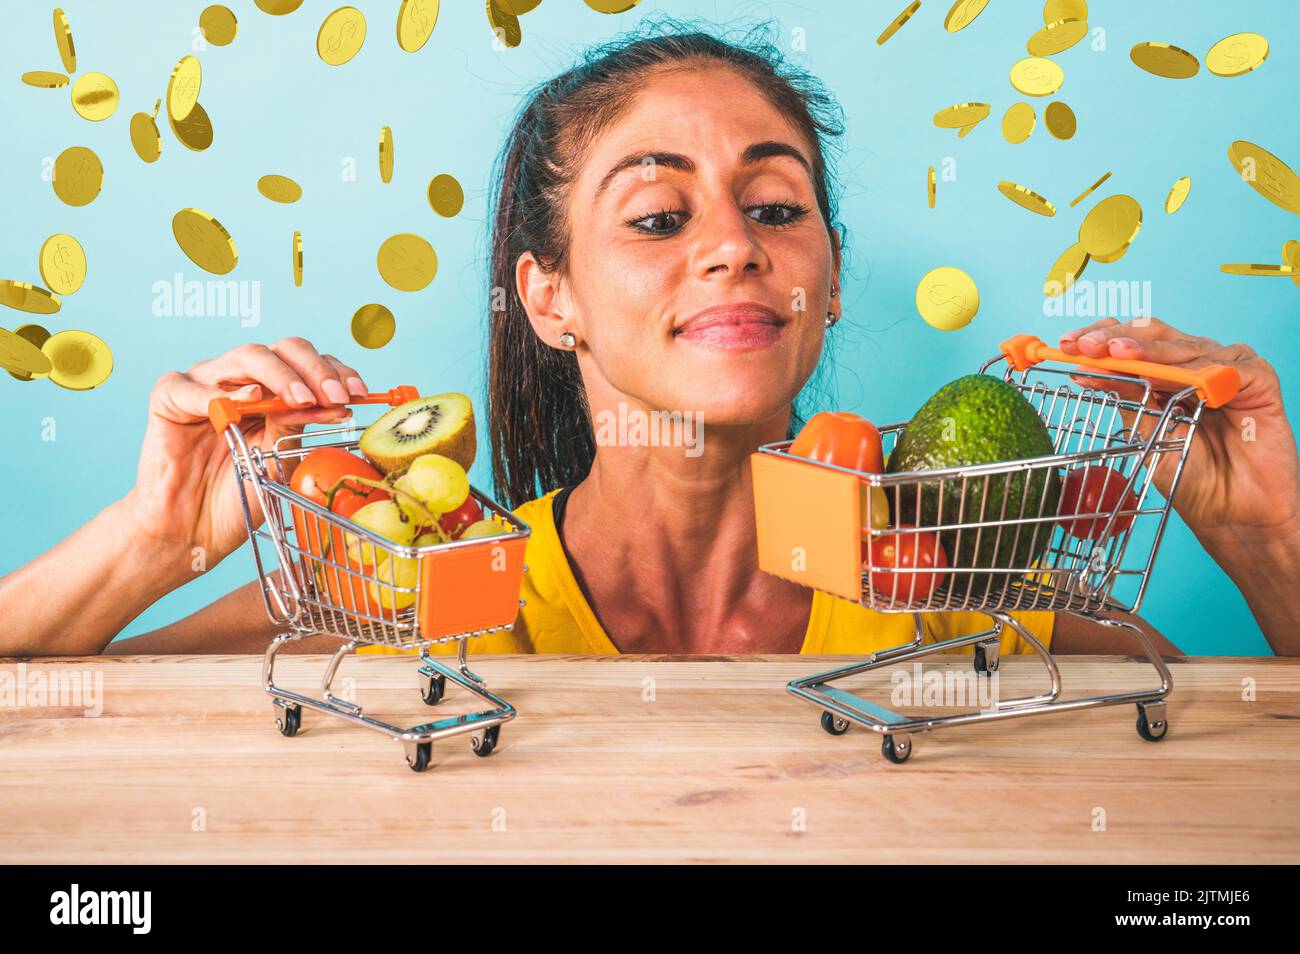 Glückliche Frau machte einen billigen und gesunden Einkauf von Obst Stockfoto